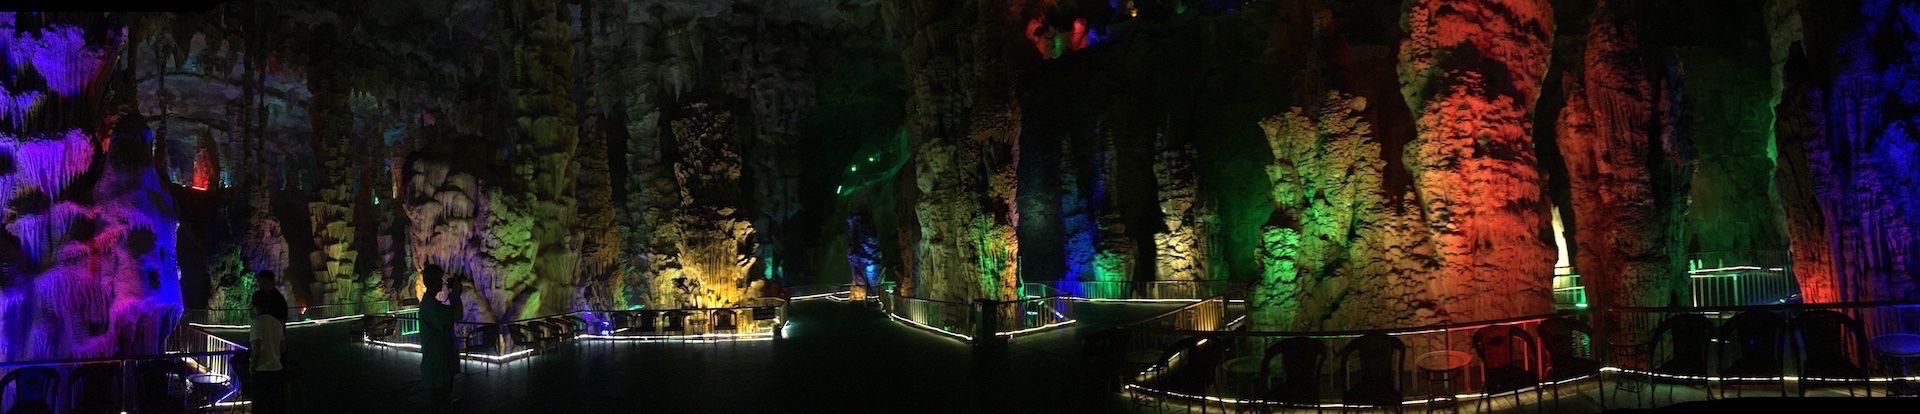 Am Fuße des Taishan können Besucher eine der größten und beeindruckendsten Tropfsteinhöhlen der Welt entdecken: Ein Teil der unterirdischen Welt ist sogar mit Flößen befahrbar: Die "Tai'an Baolong Great Rift Valley"-Tour ist drei Kilometer lang.